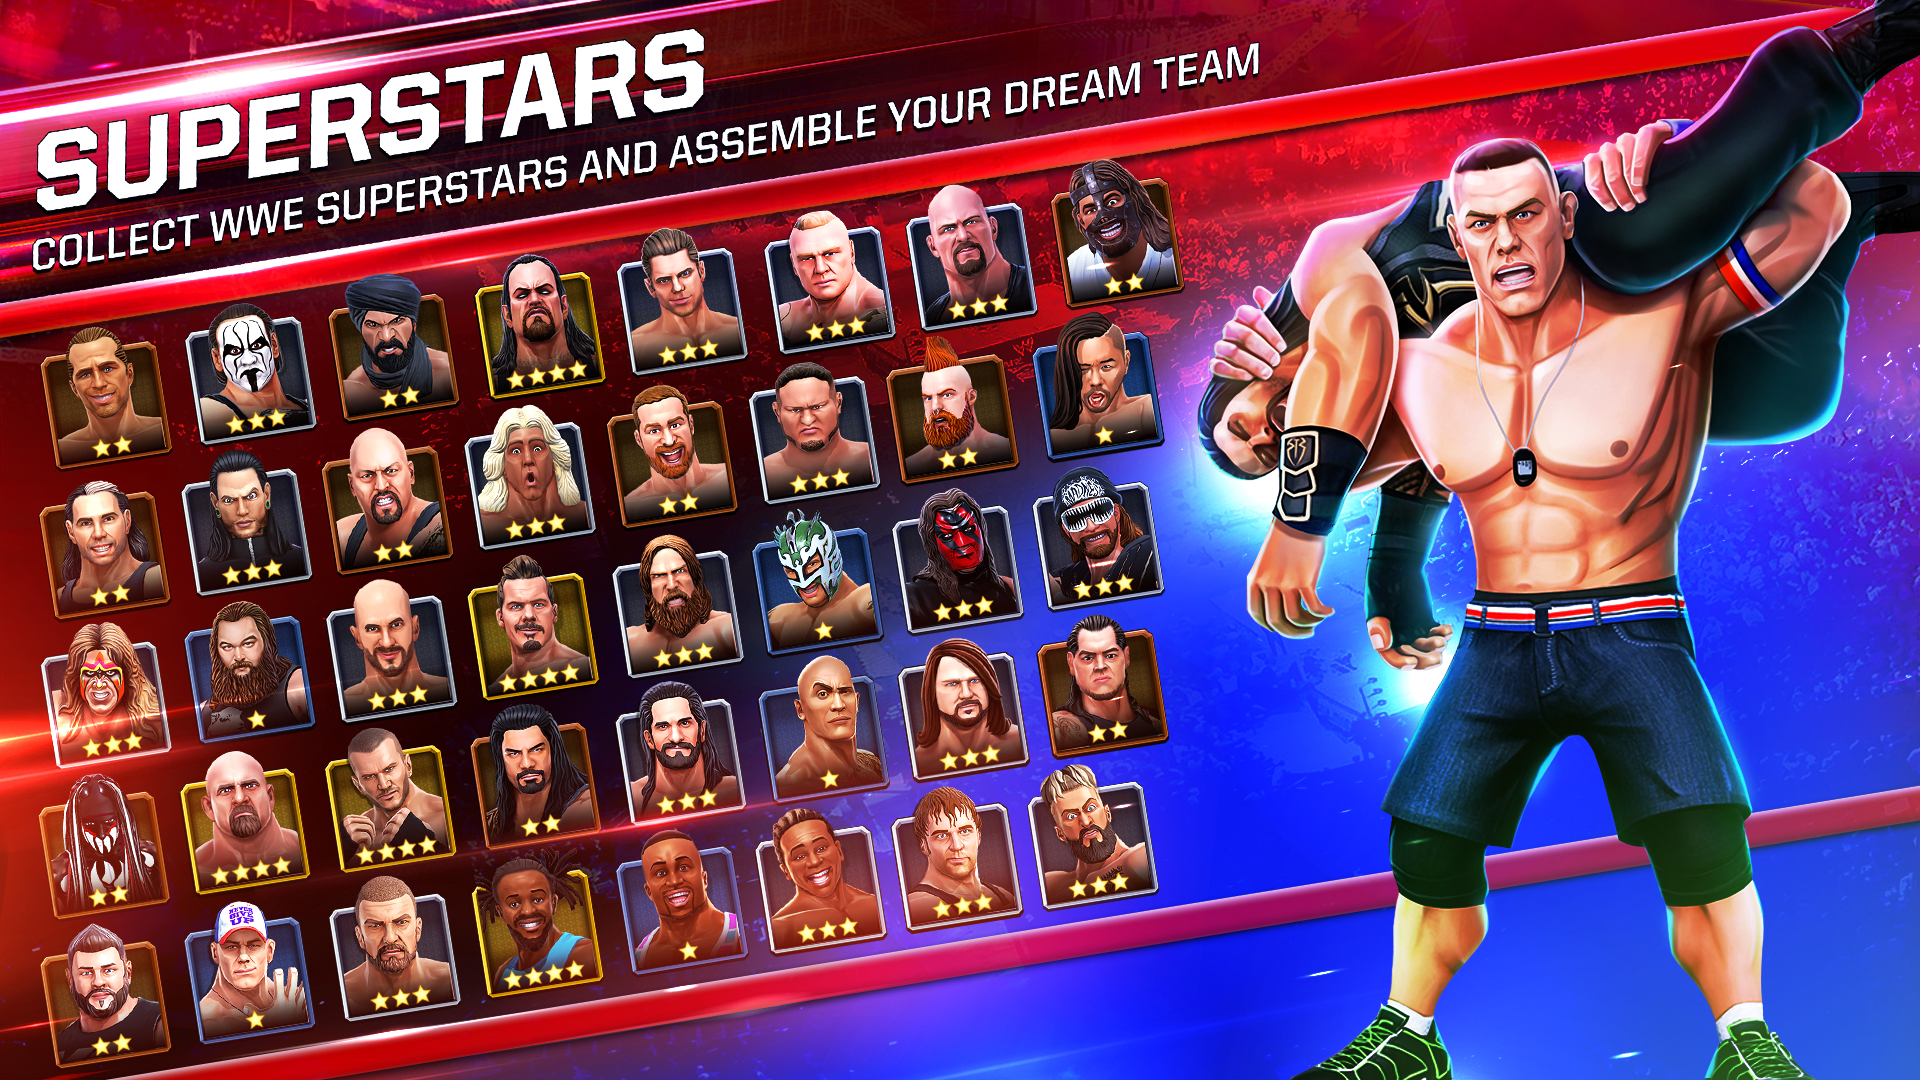 Screenshot 02 - Superstars.jpg